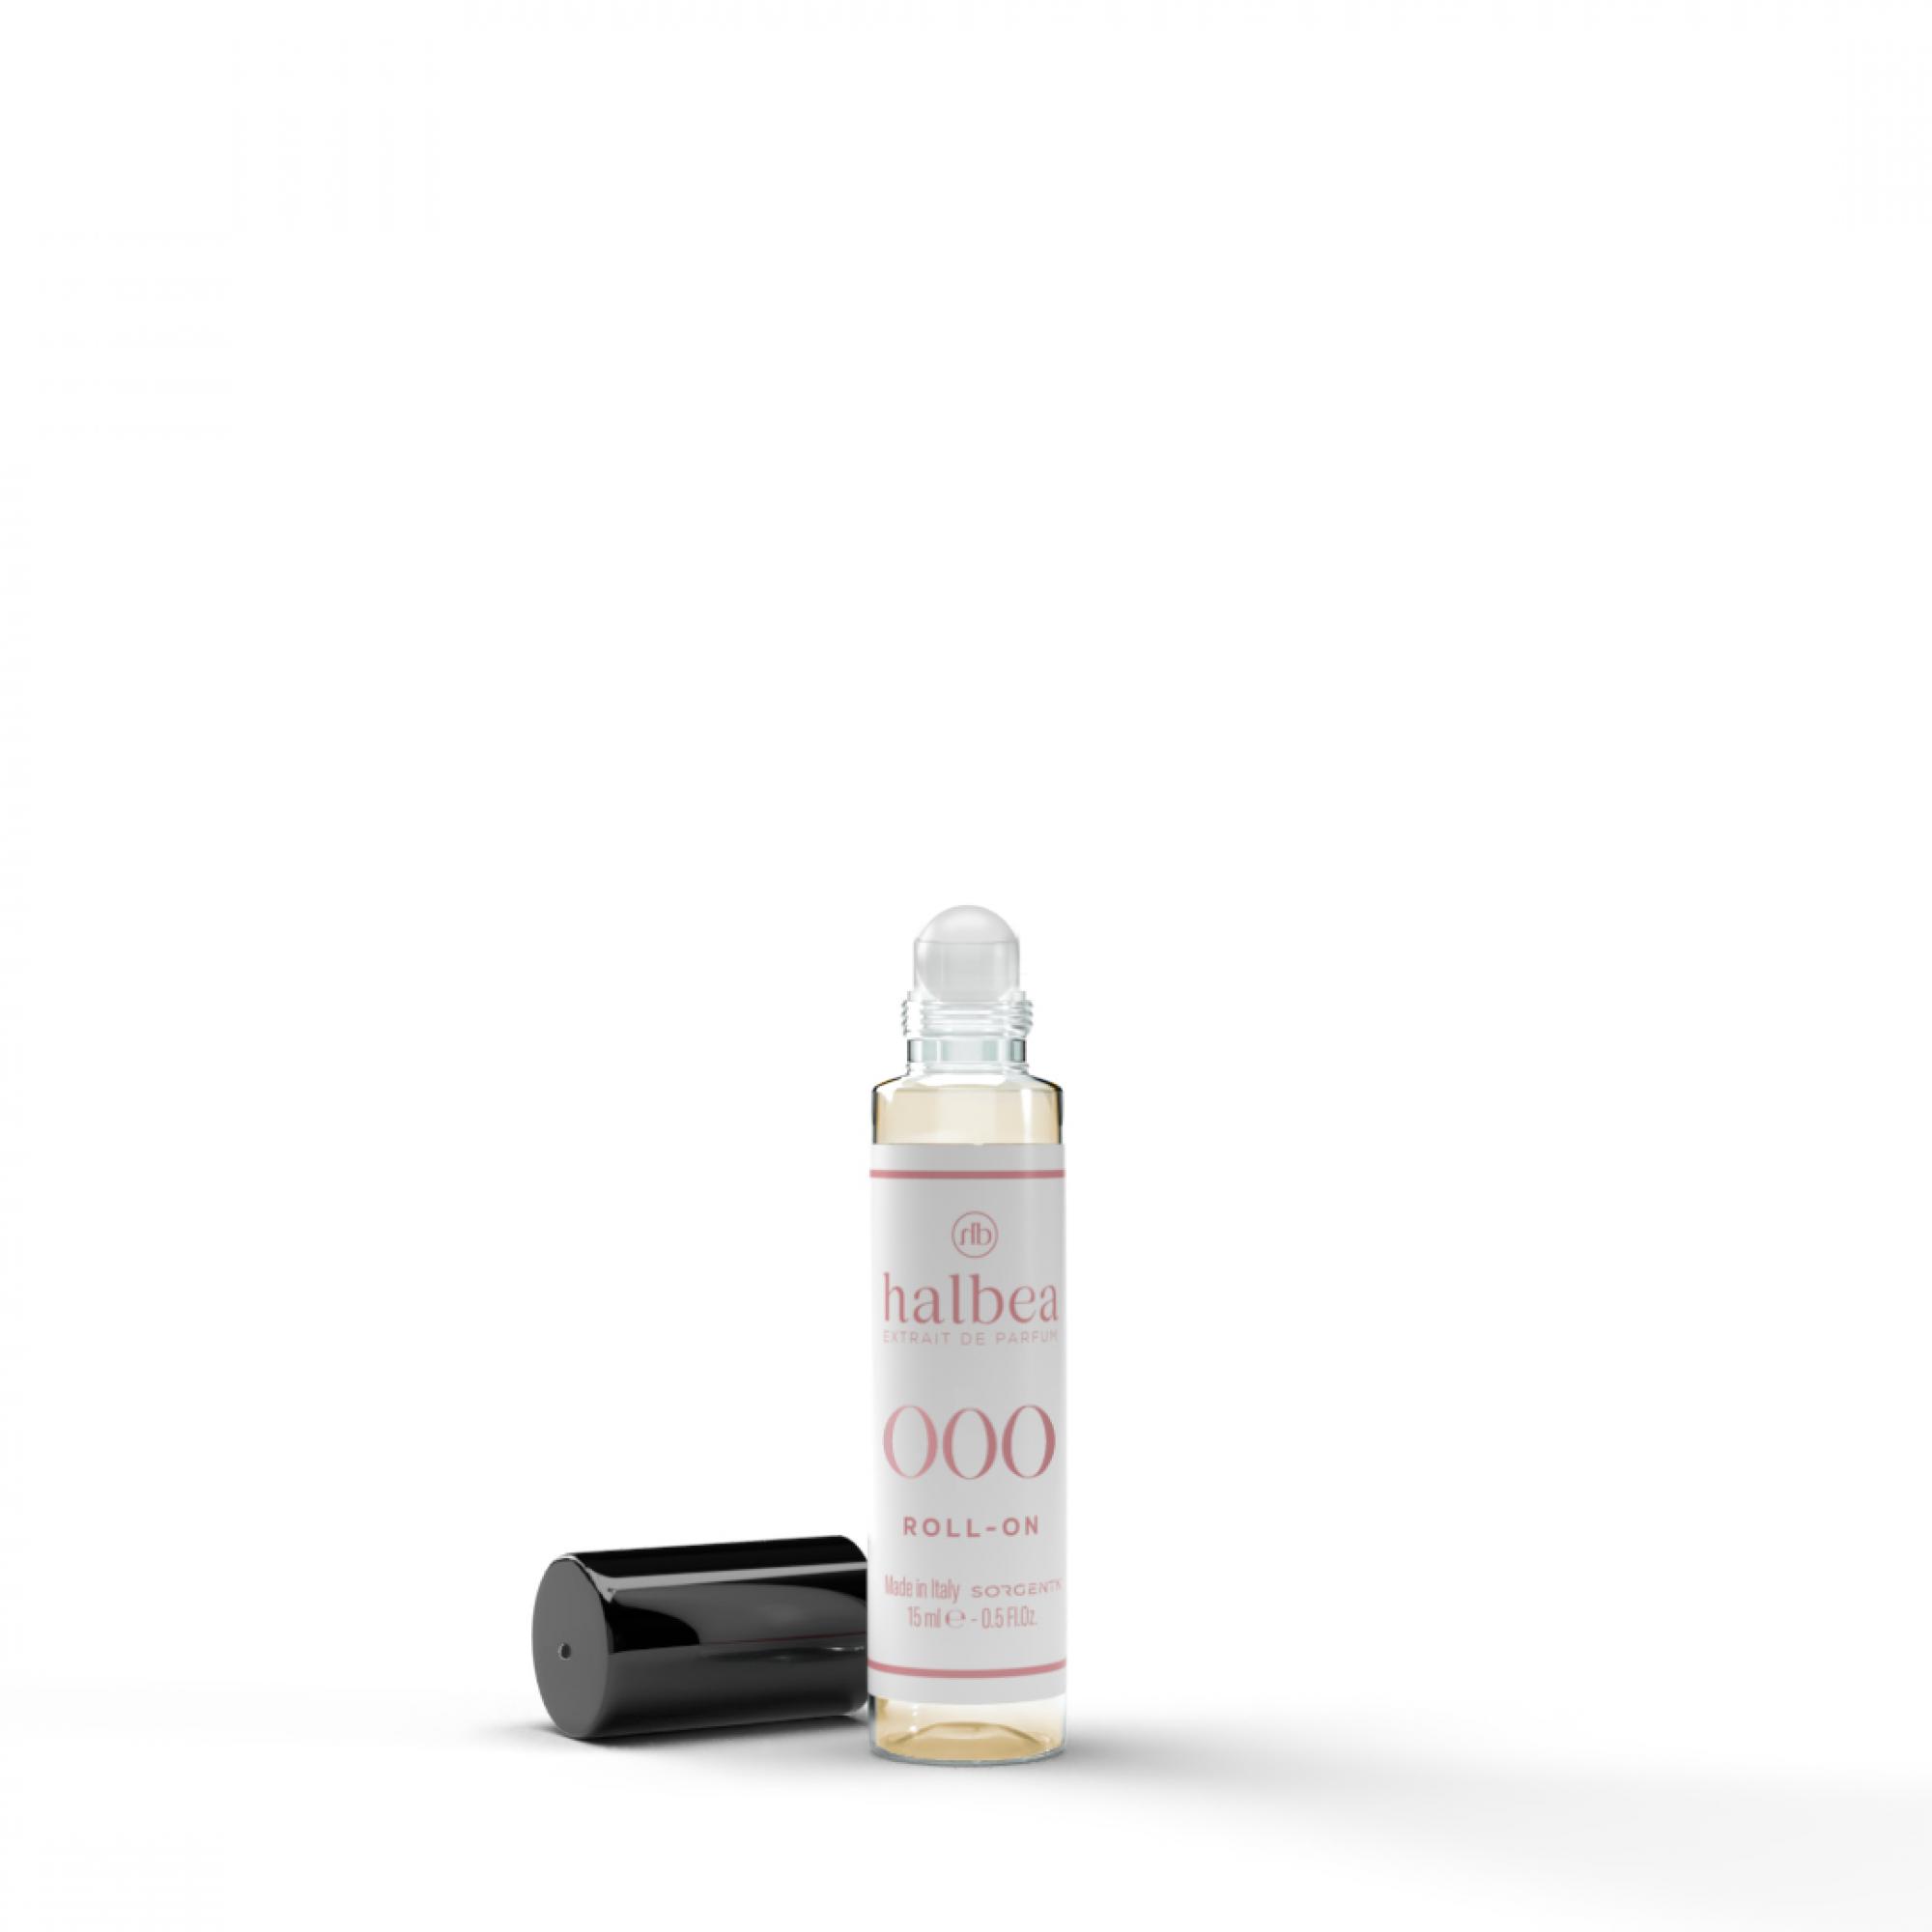 Halbea Parfum Nr. 2 insp. by Yves Saint Laurent Opium 15ml Sorgenta Duftzwillinge